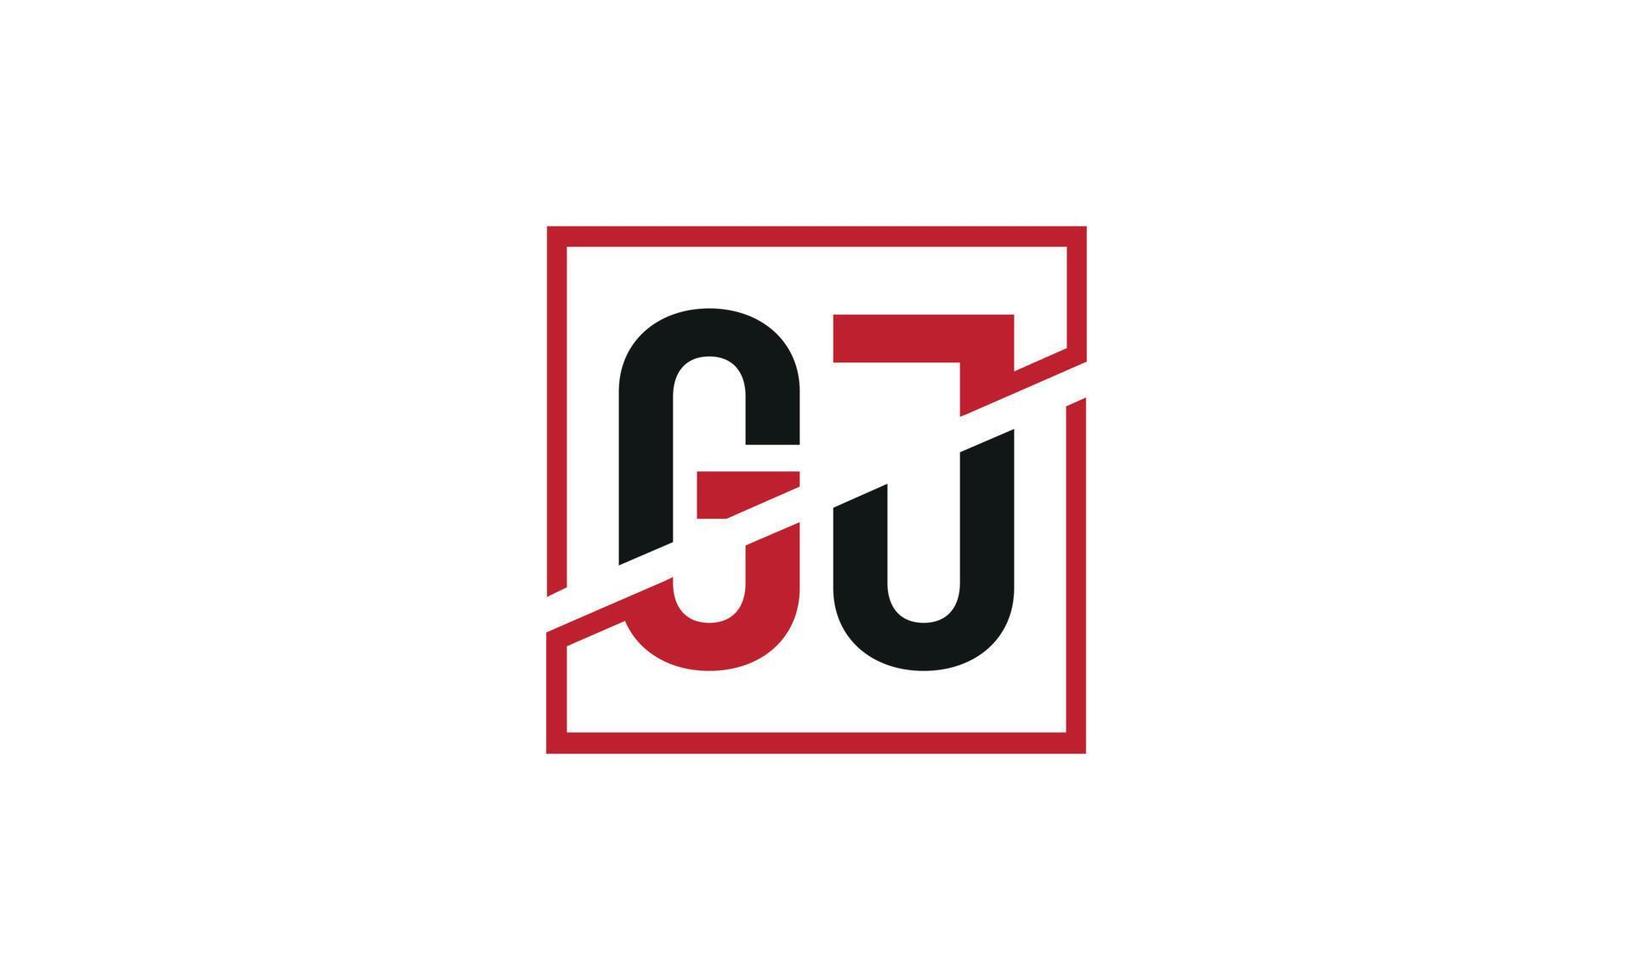 création de logo gj. conception initiale du monogramme du logo de la lettre gj en noir et rouge avec une forme carrée. vecteur pro